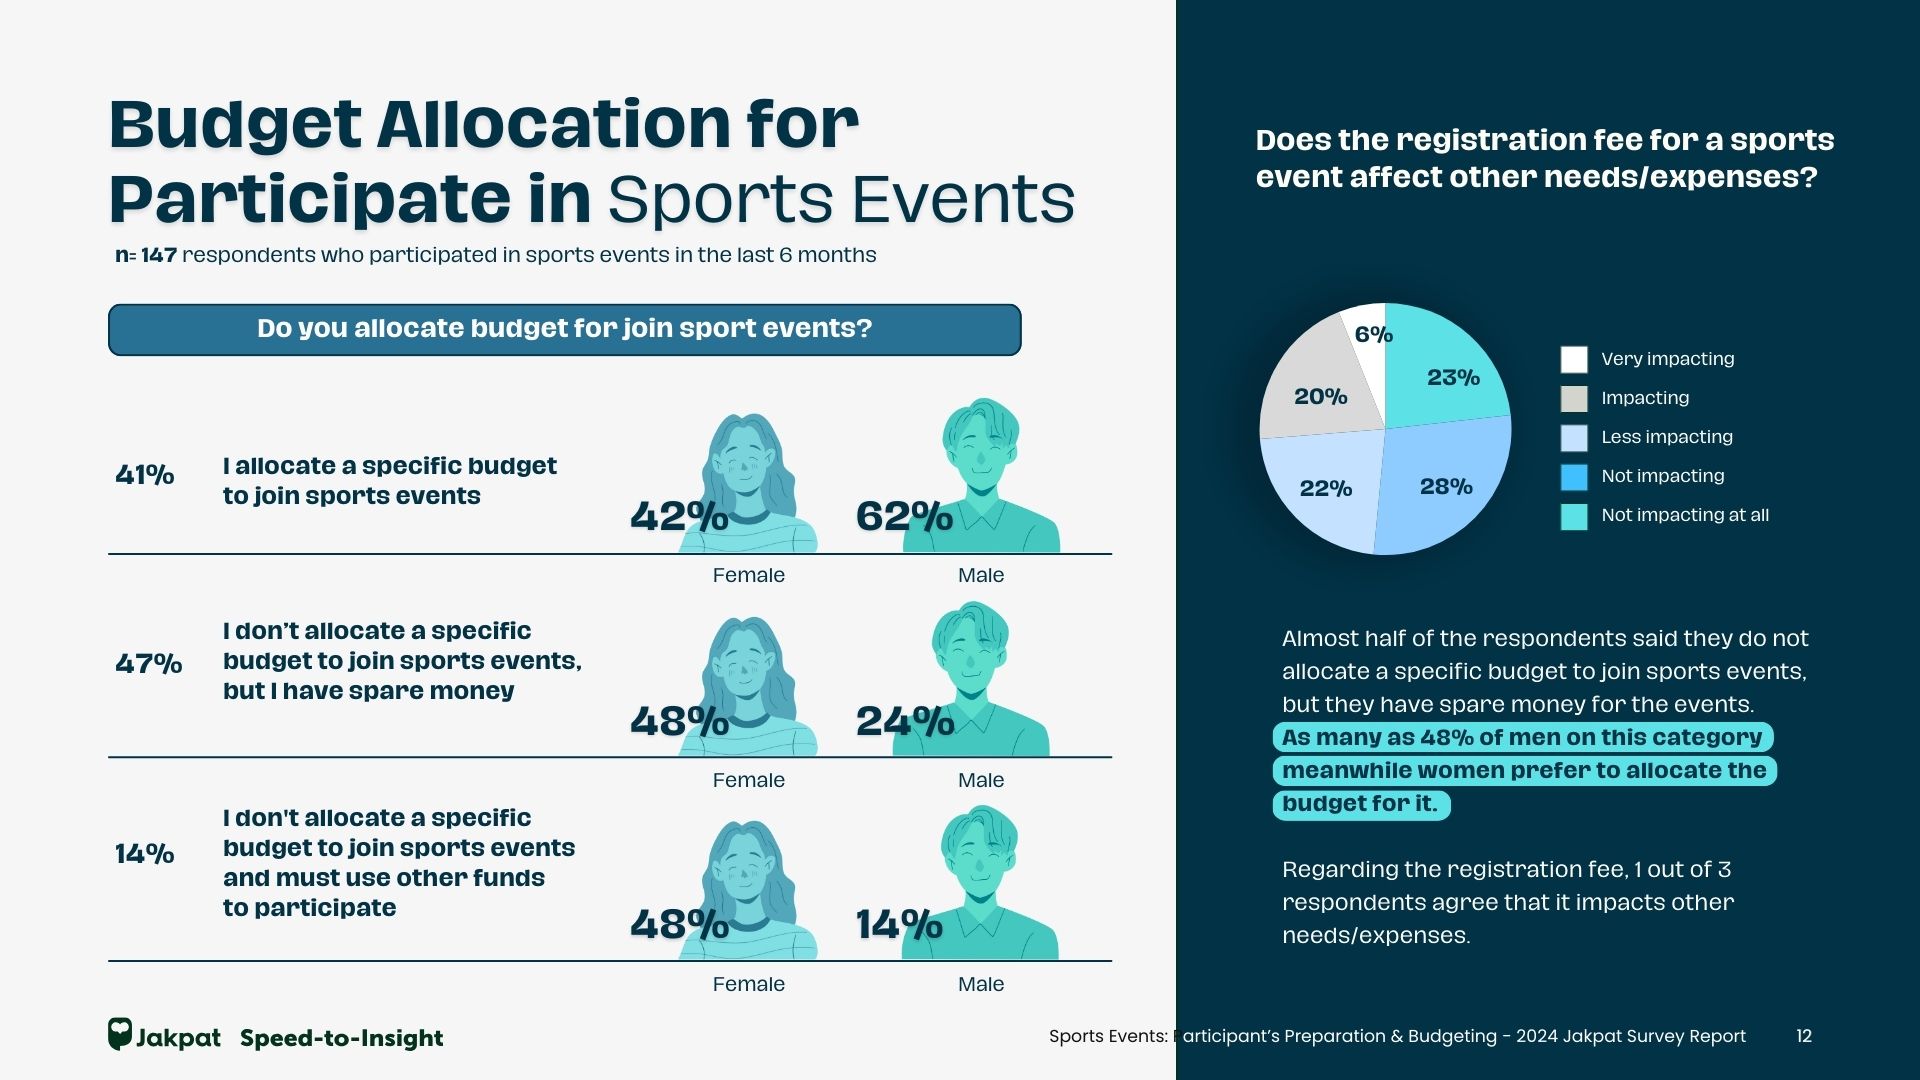 2 Sports Events Participants Preparation  Budgeting - 2024 Jakpat Survey Report